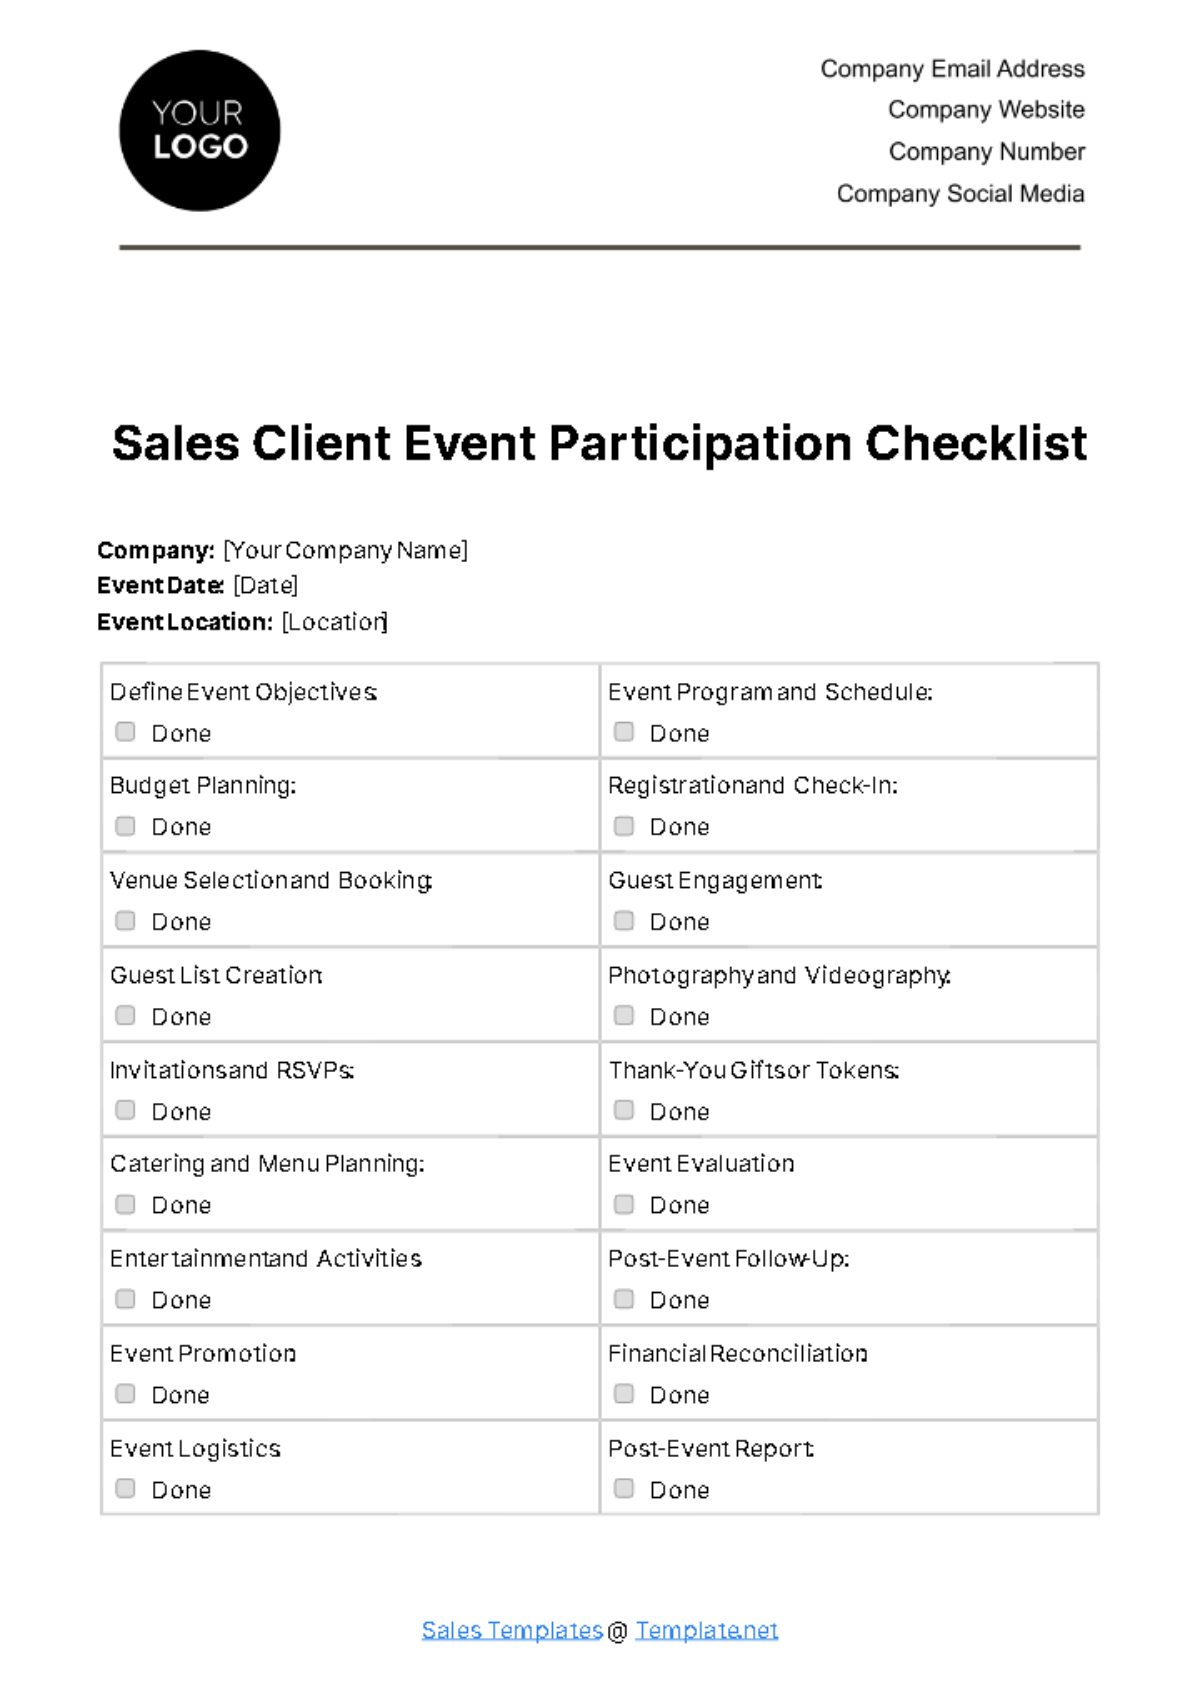 Sales Client Event Participation Checklist Template